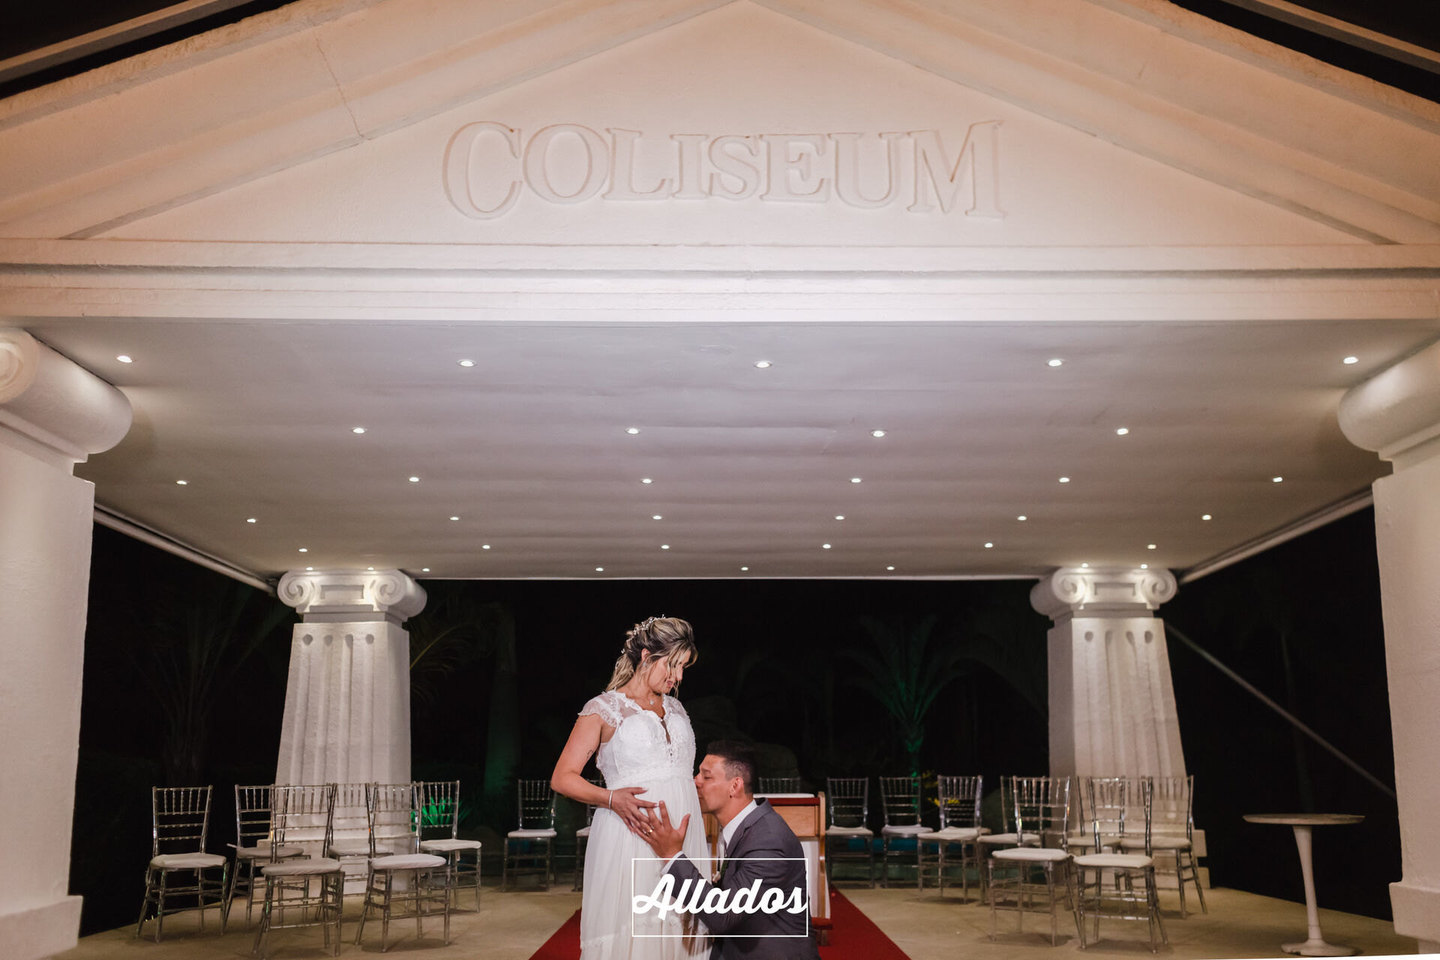 Casamento Ana Clara e Leandro no Coliseum Eventos - Sulacap